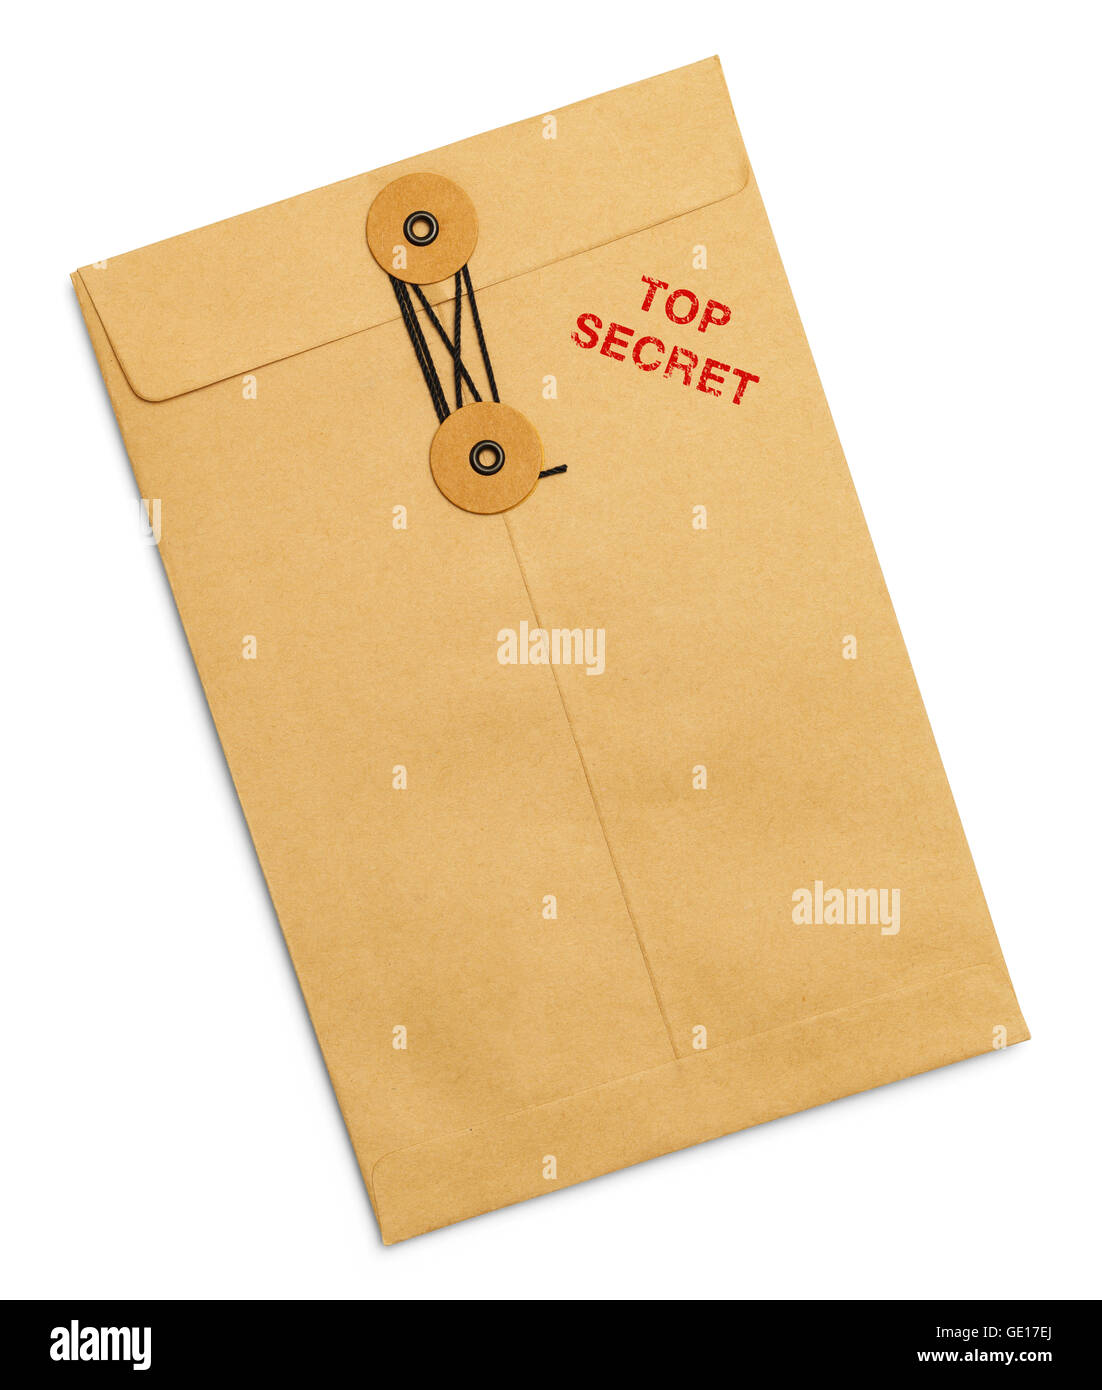 Top Secret lié enveloppe scellée isolé sur fond blanc. Banque D'Images